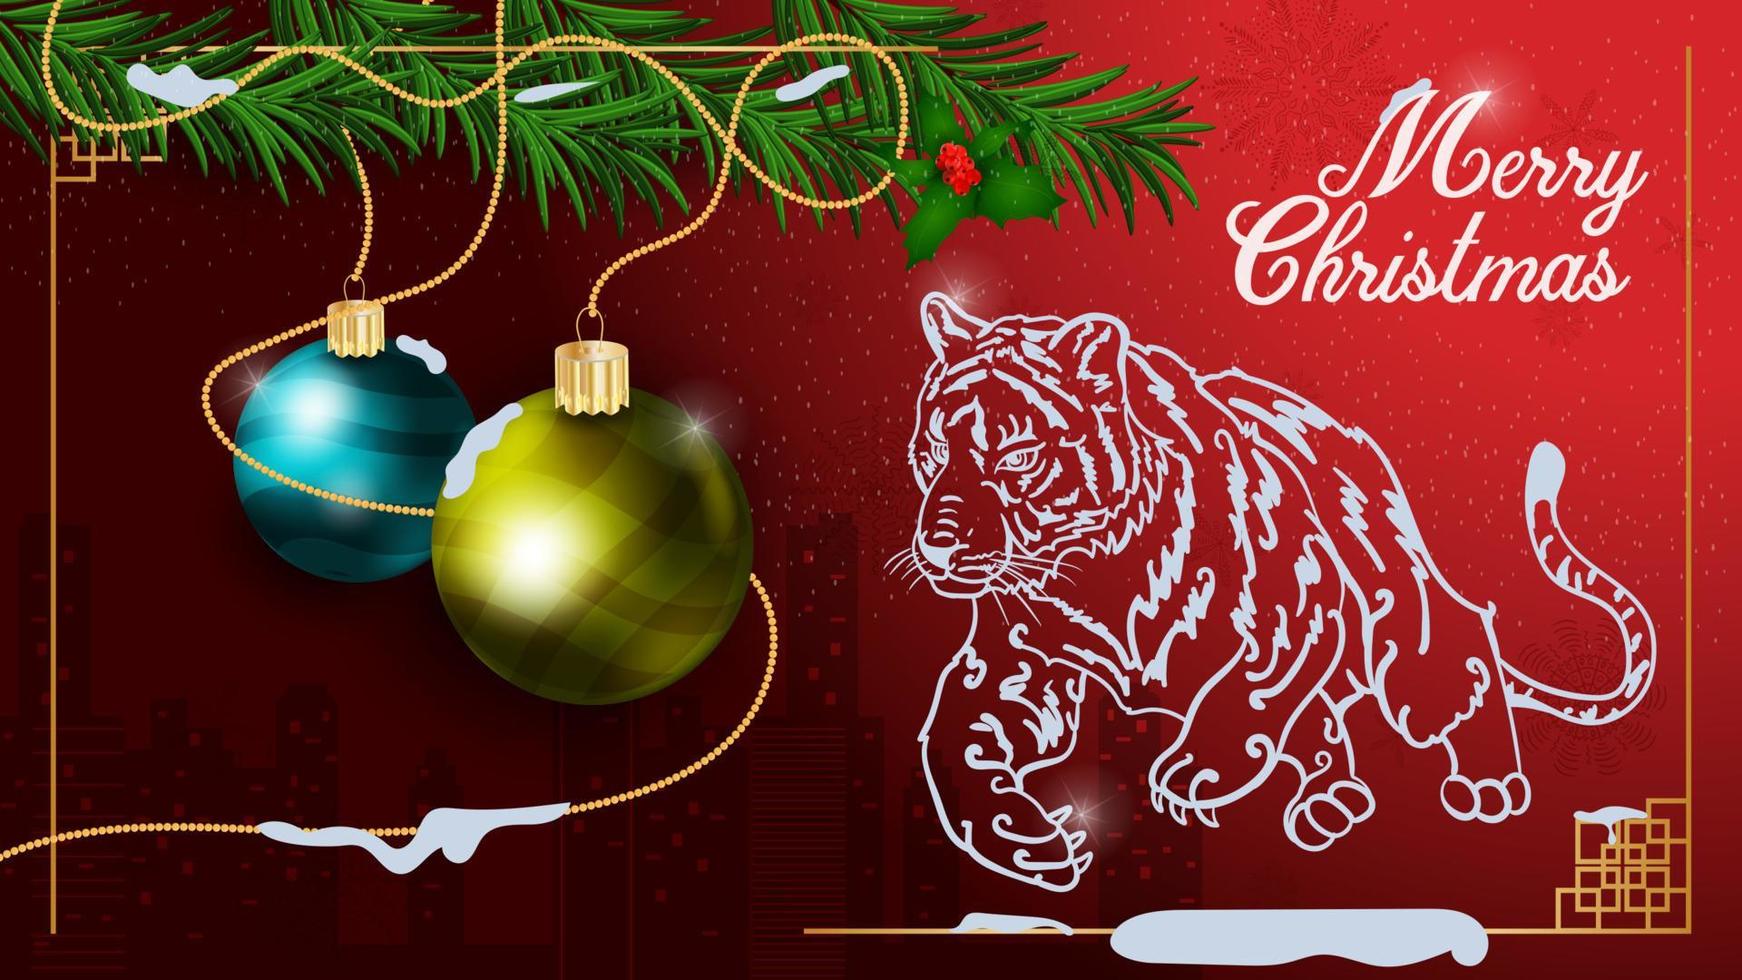 banderoll för design av festligt nyår och juldesign två julkulor som hänger på grangrenar mot bakgrunden av en springande tiger vektor